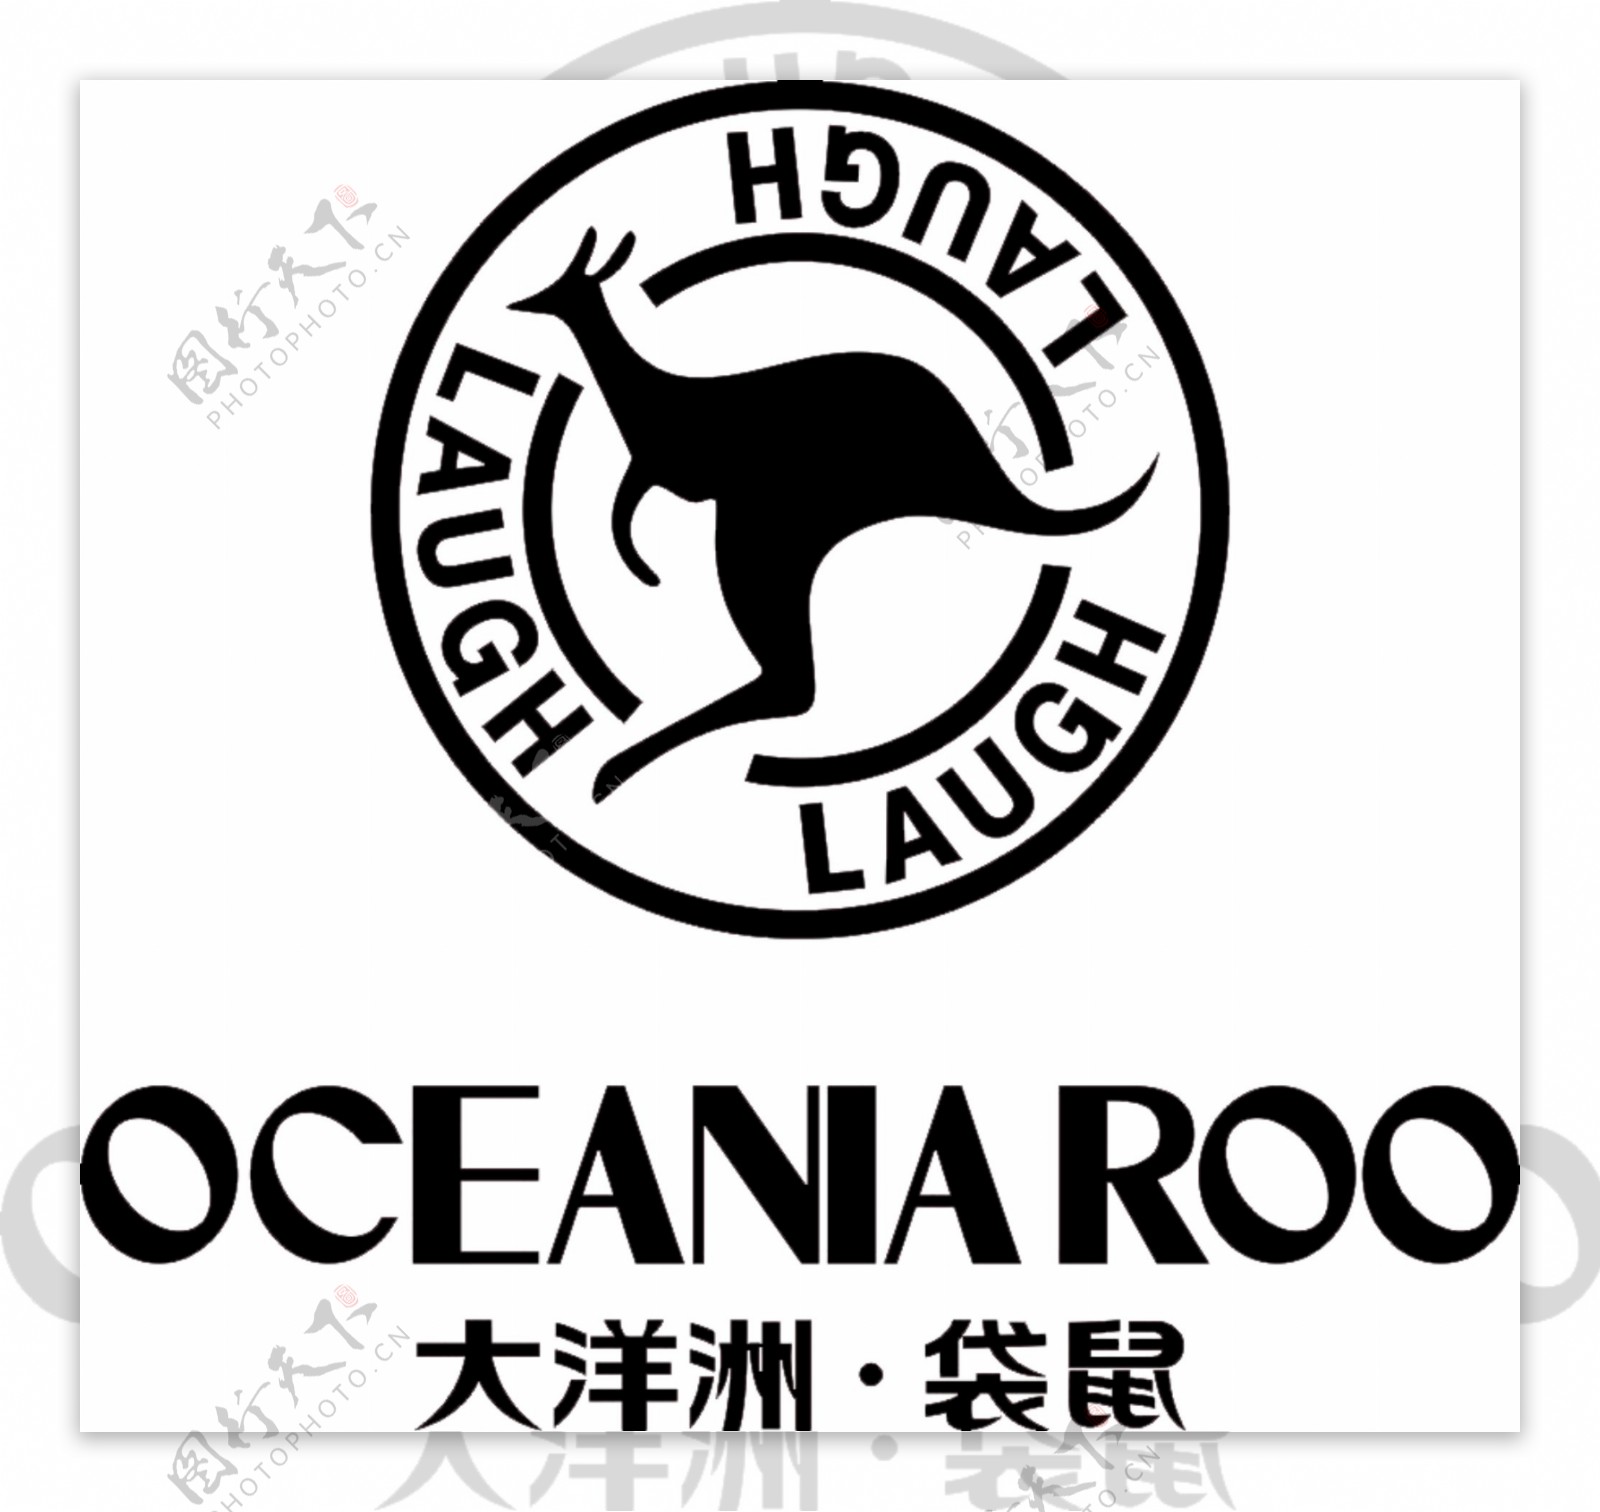 大洋洲袋鼠标志图片